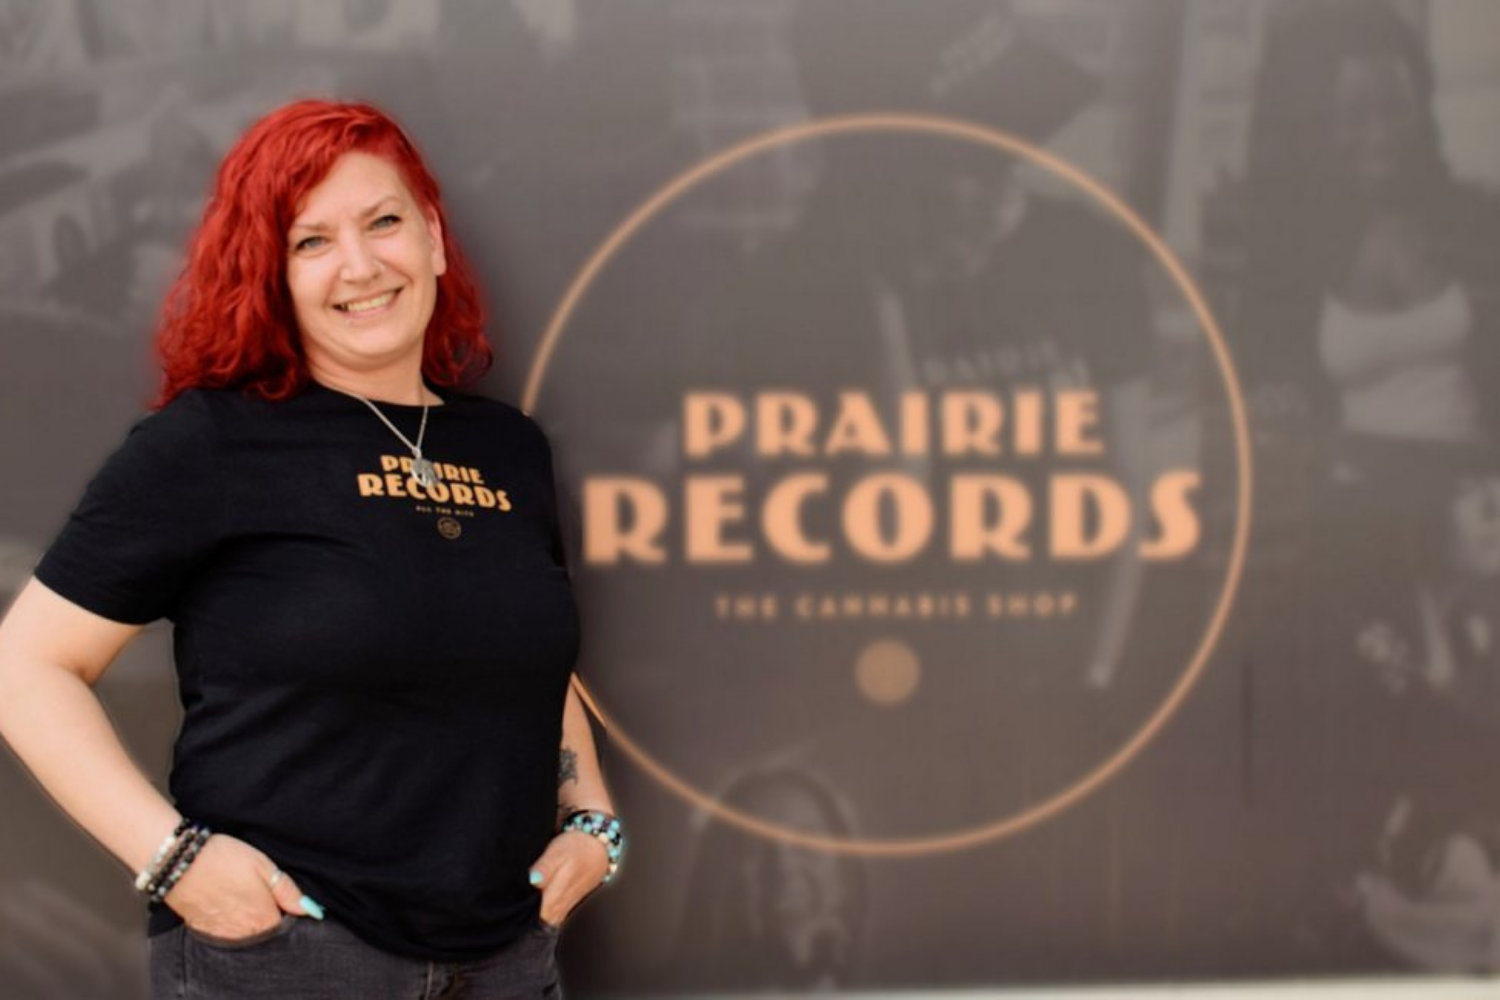 Prairie records calgary cannabis